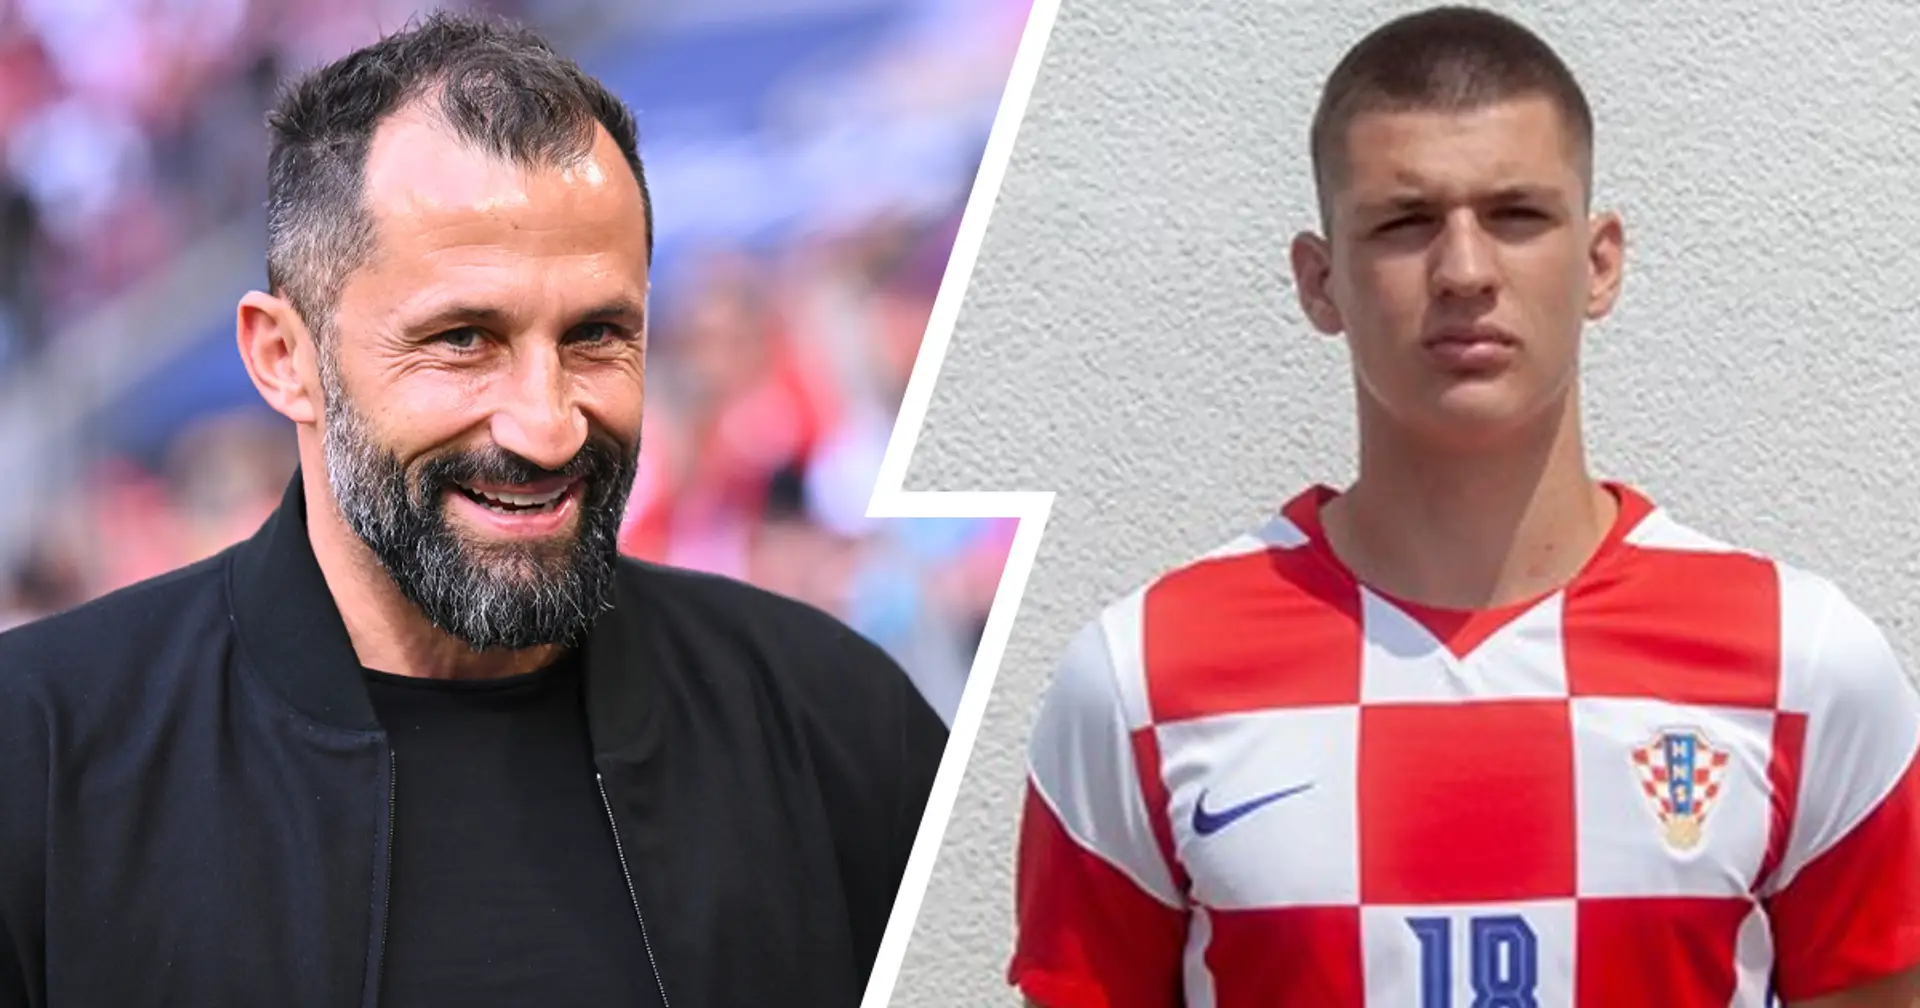 Ljubo Puljić ist ein 15-jähriges Talent auf dem Radar des FC Bayern: Er spielt bereits im Profi-Team